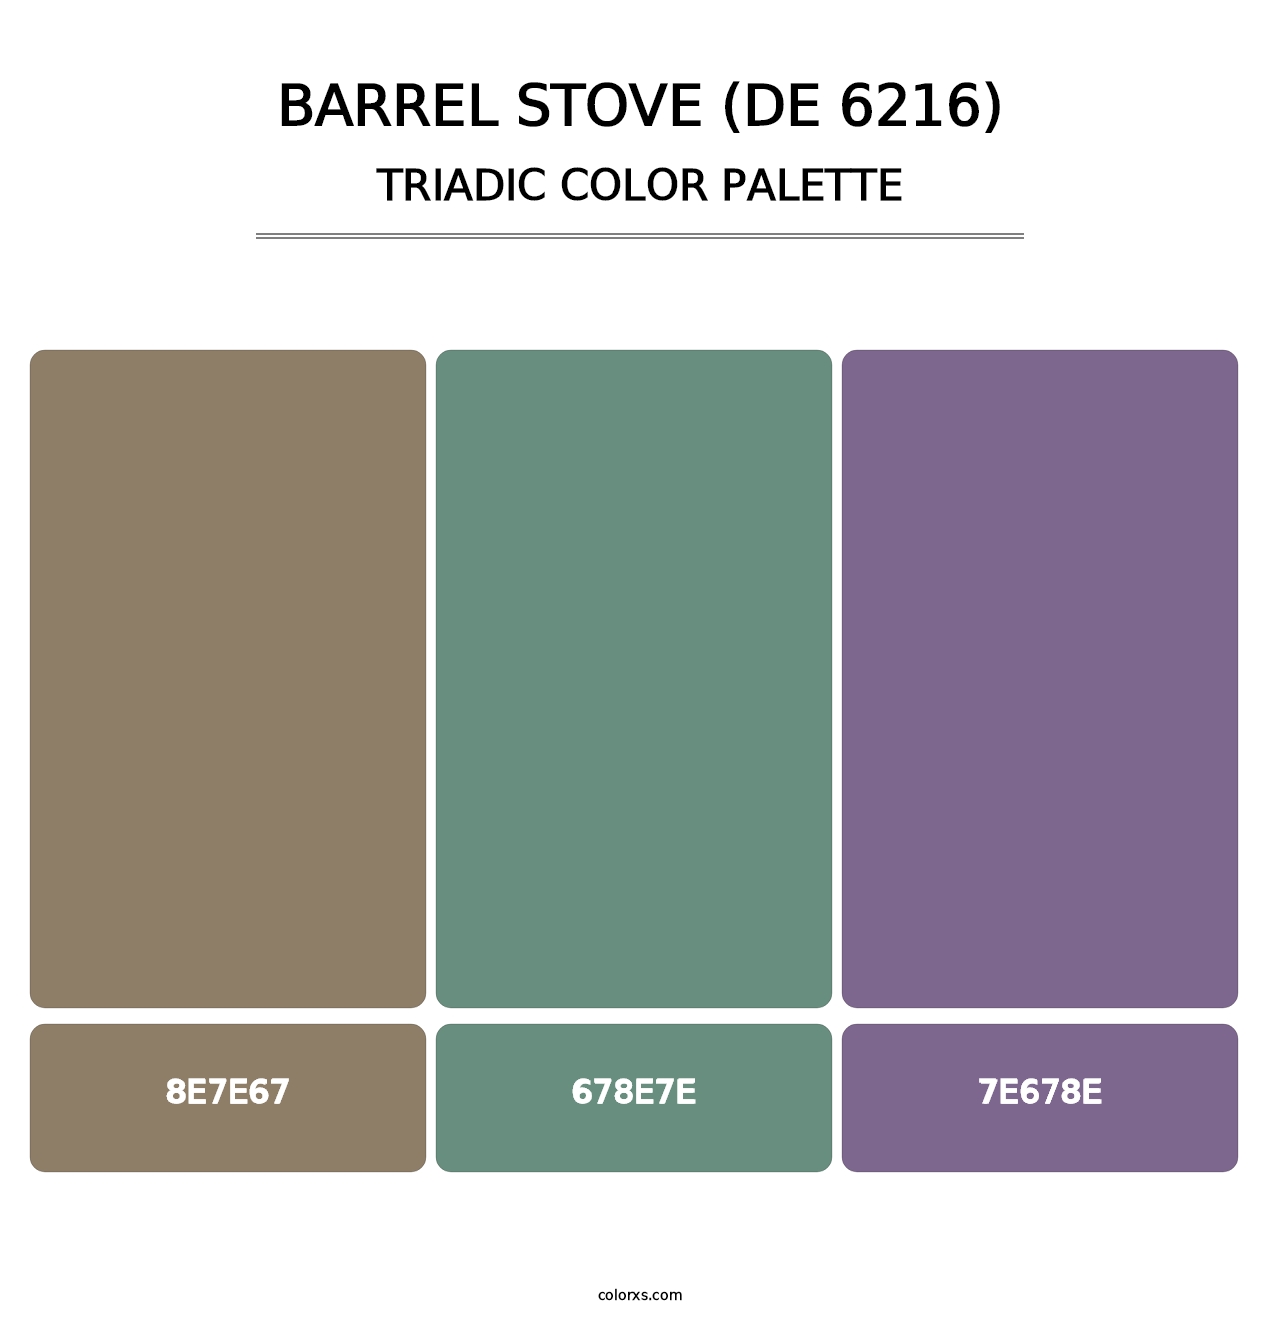 Barrel Stove (DE 6216) - Triadic Color Palette